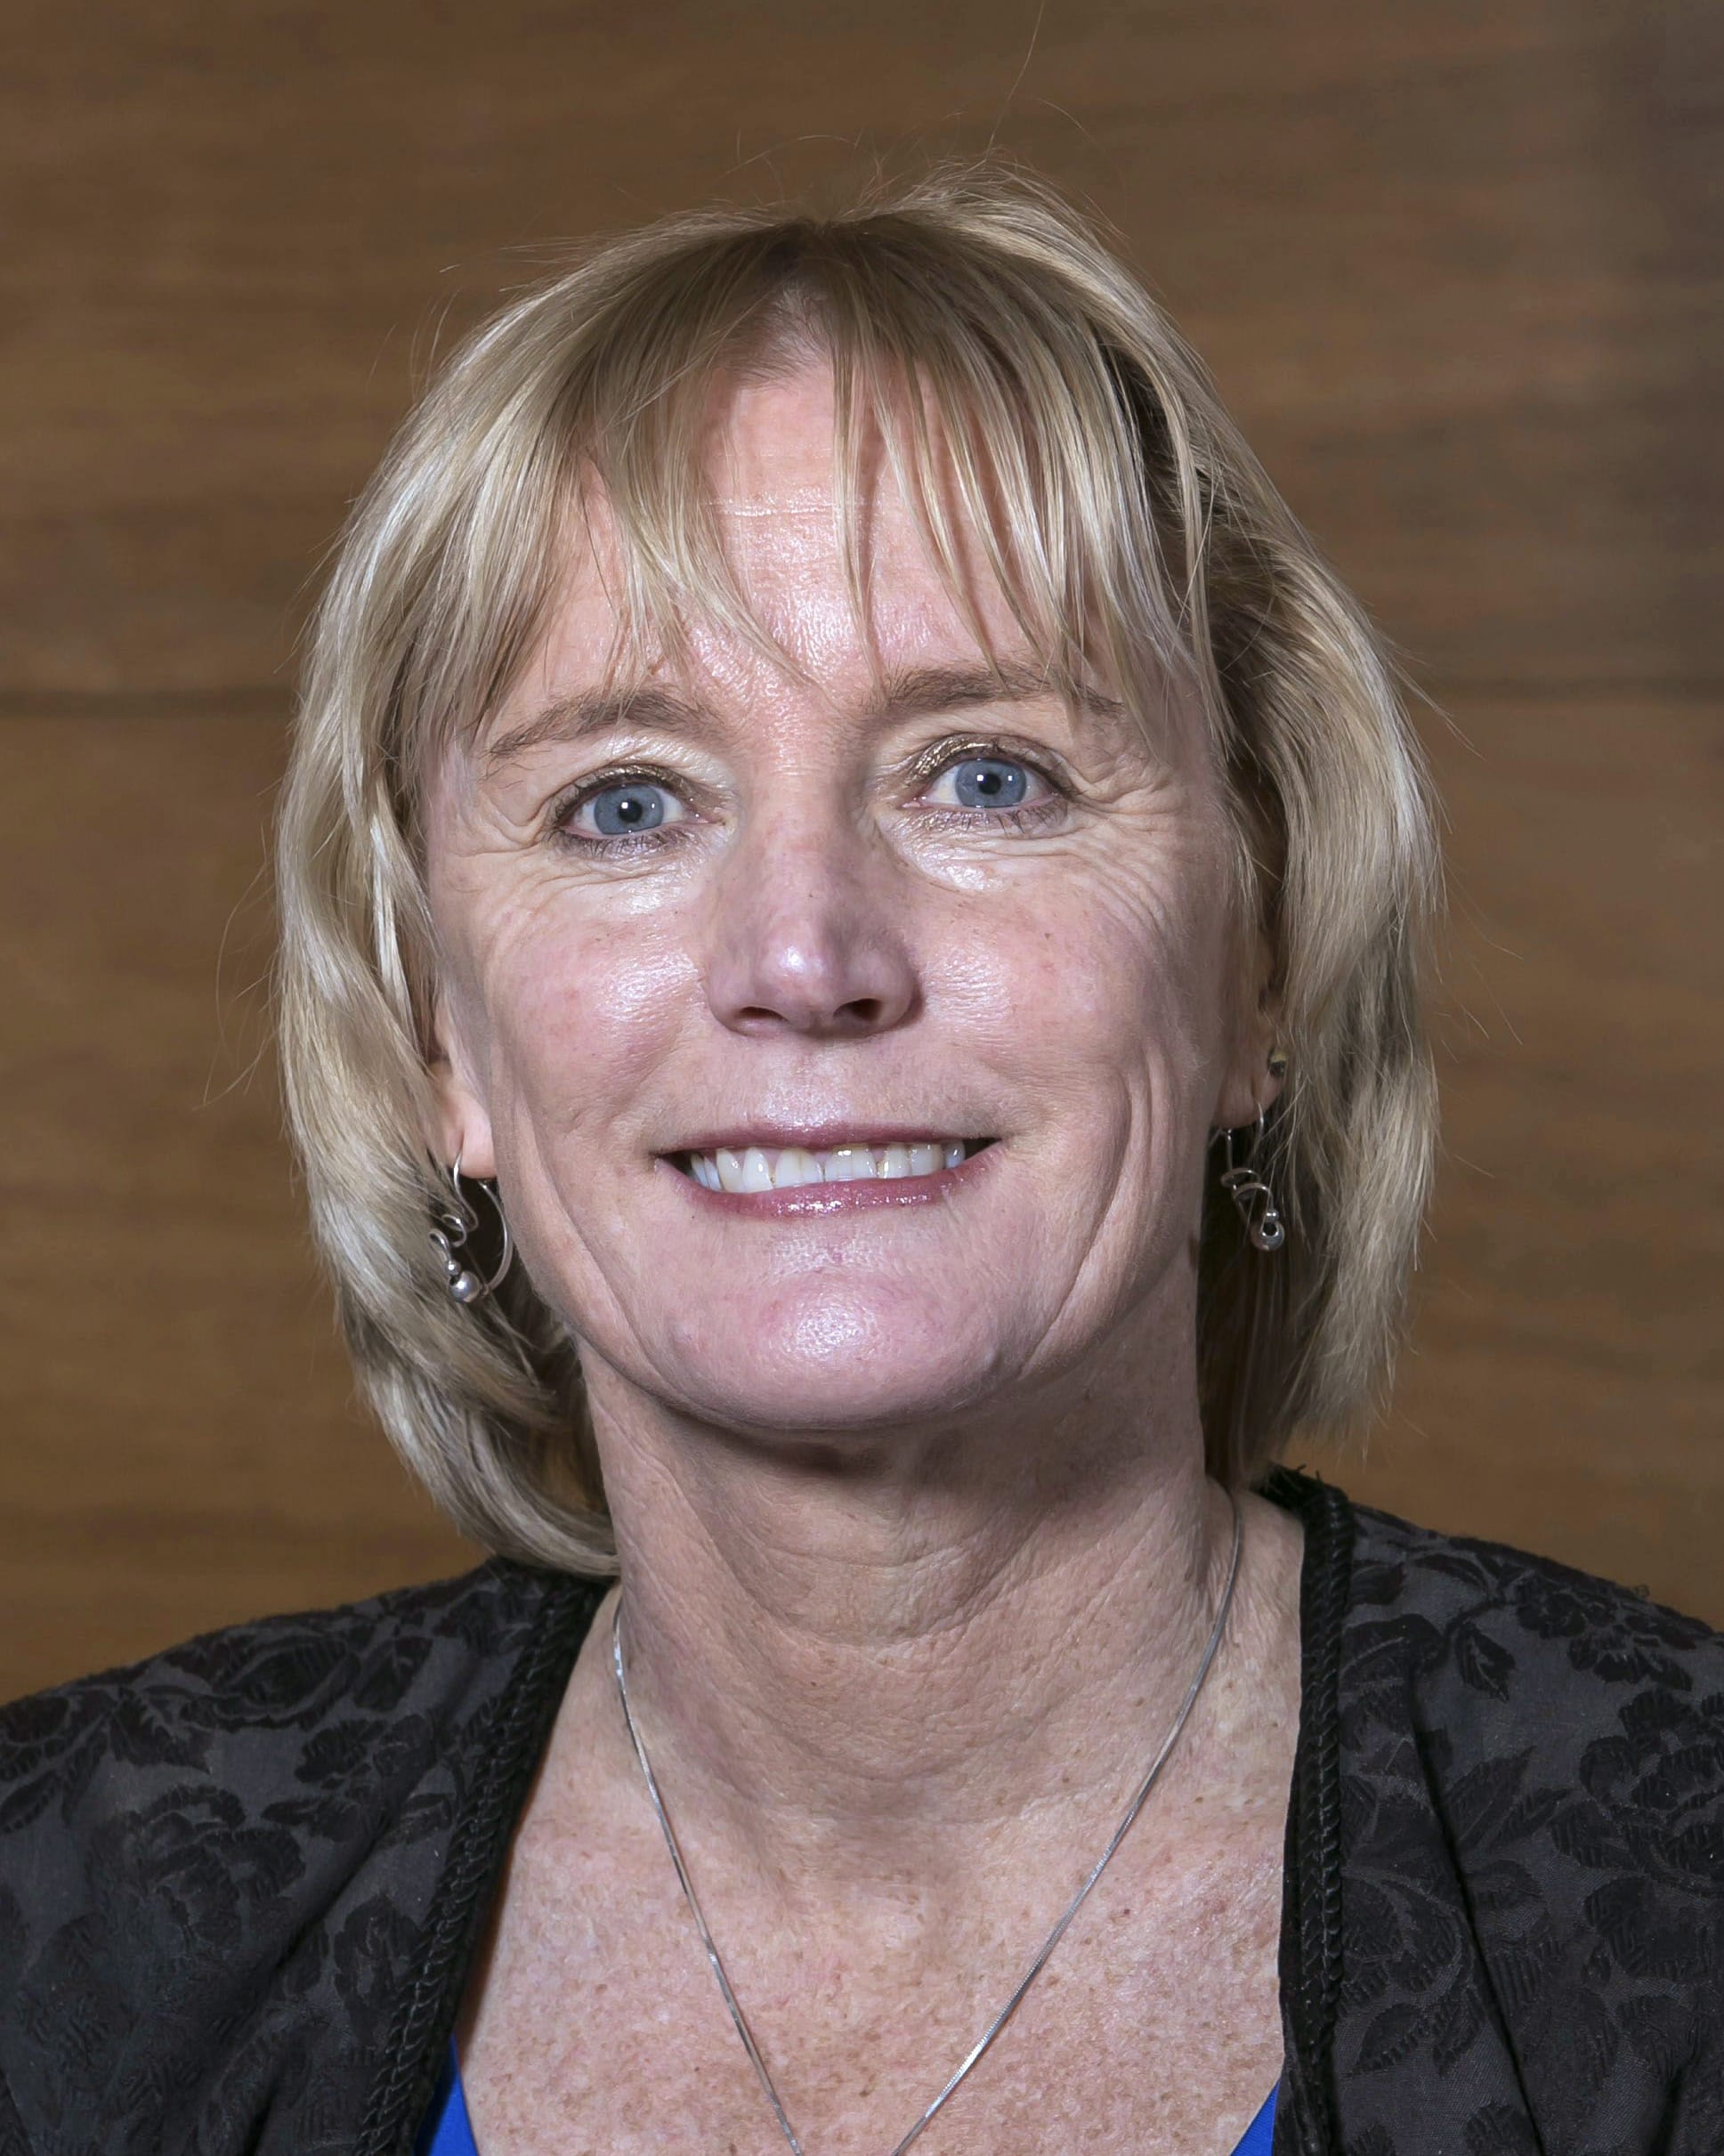 Auckland University's Immunisation Advisory Centre director, Dr Nikki Turner